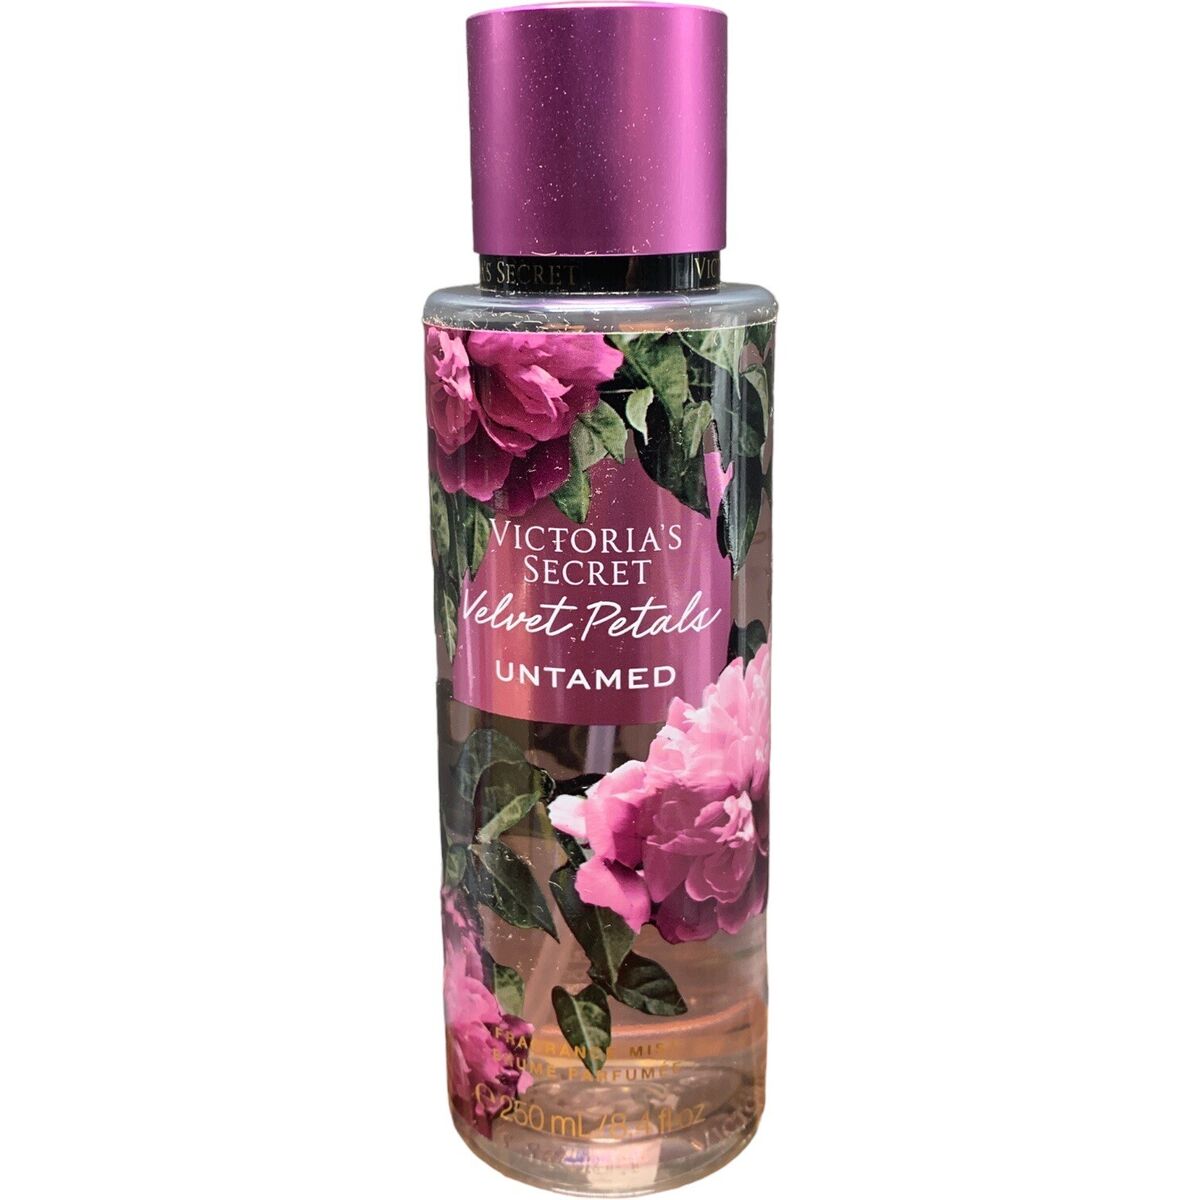 Parfums Velvet Petals Untamed de la marque Victoria's Secret mixte 